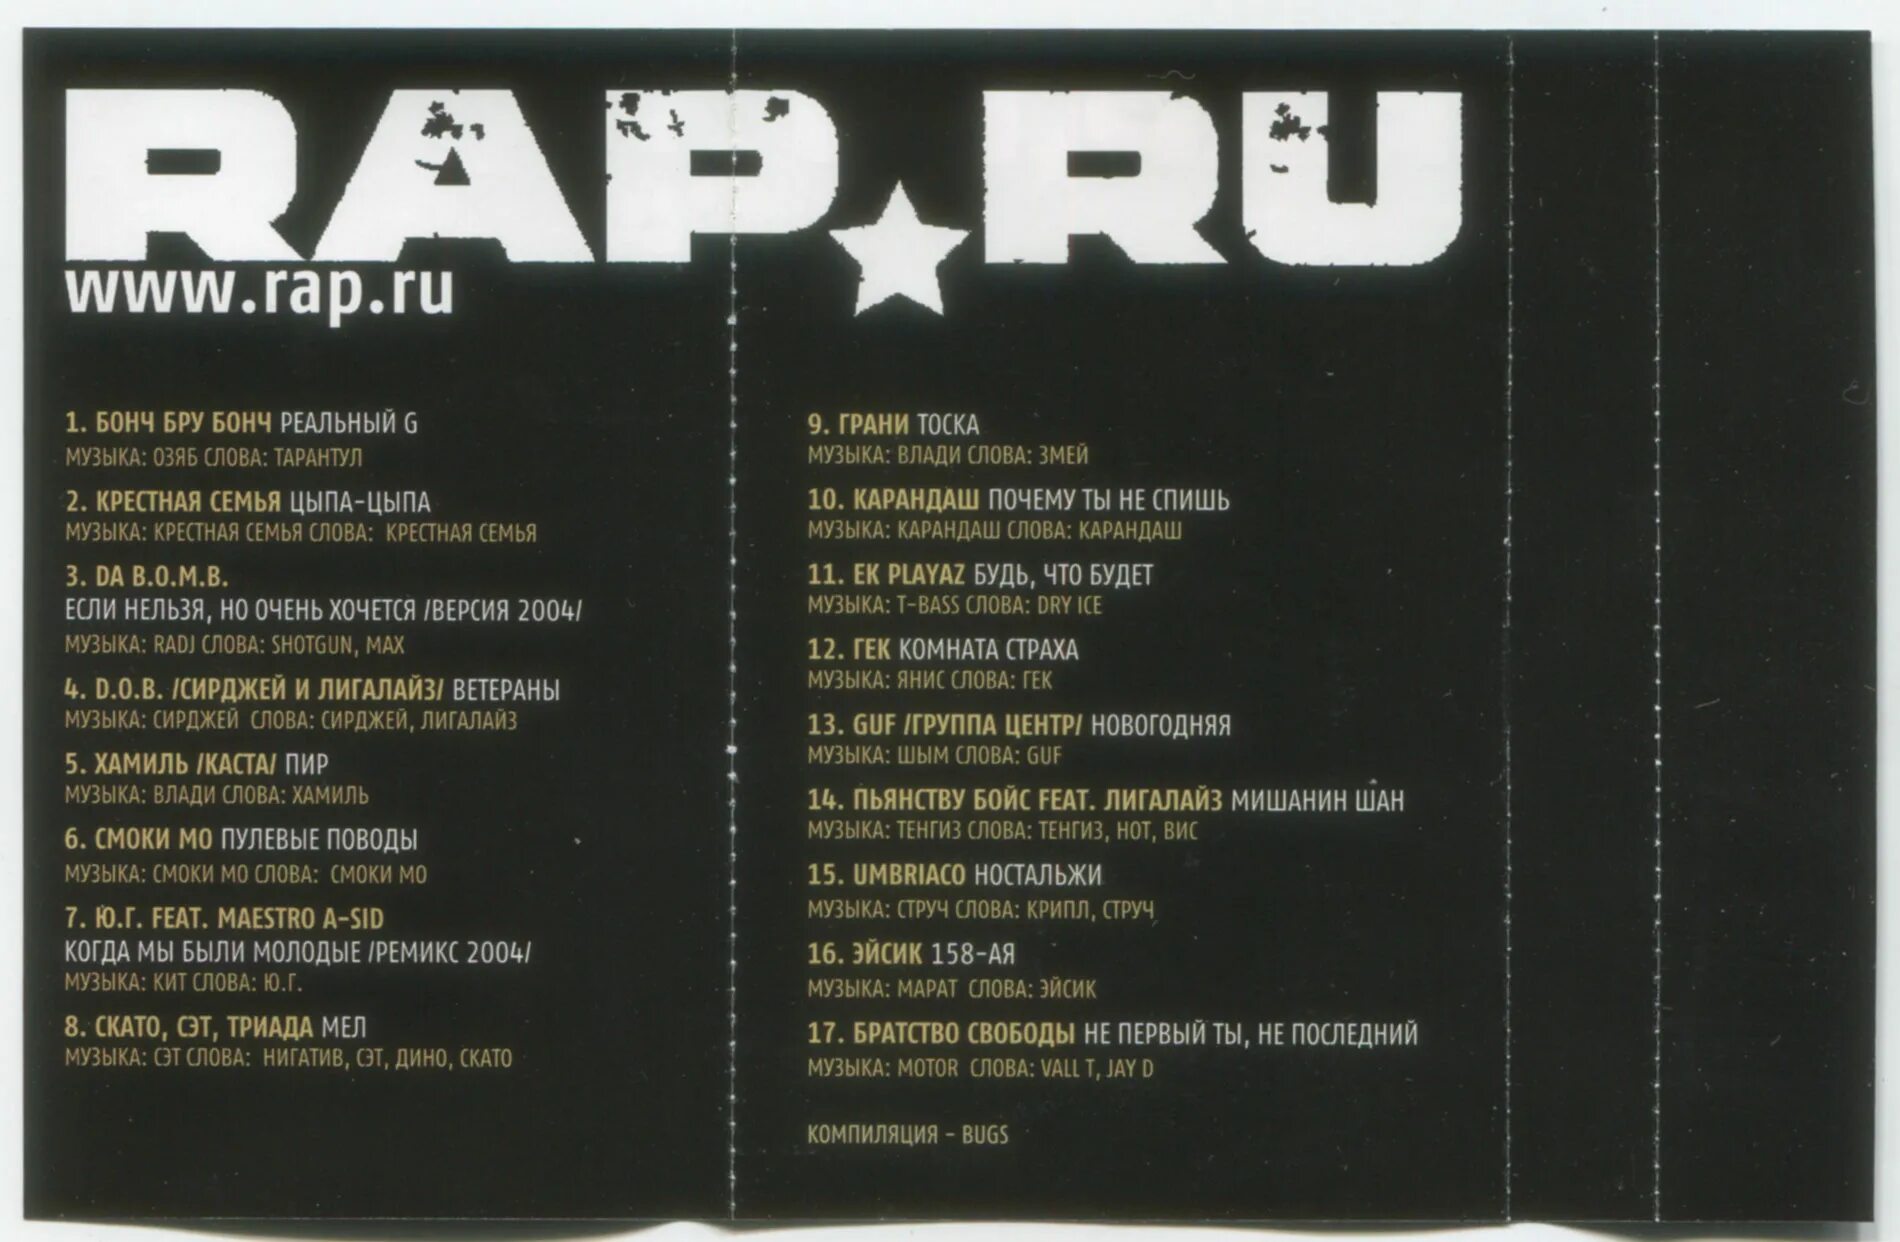 Песня слов басс. Русский рэп 2004. Рэп сборник 2004. Обложки альбомов русского рэпа. Русский рэп сборник 2003.